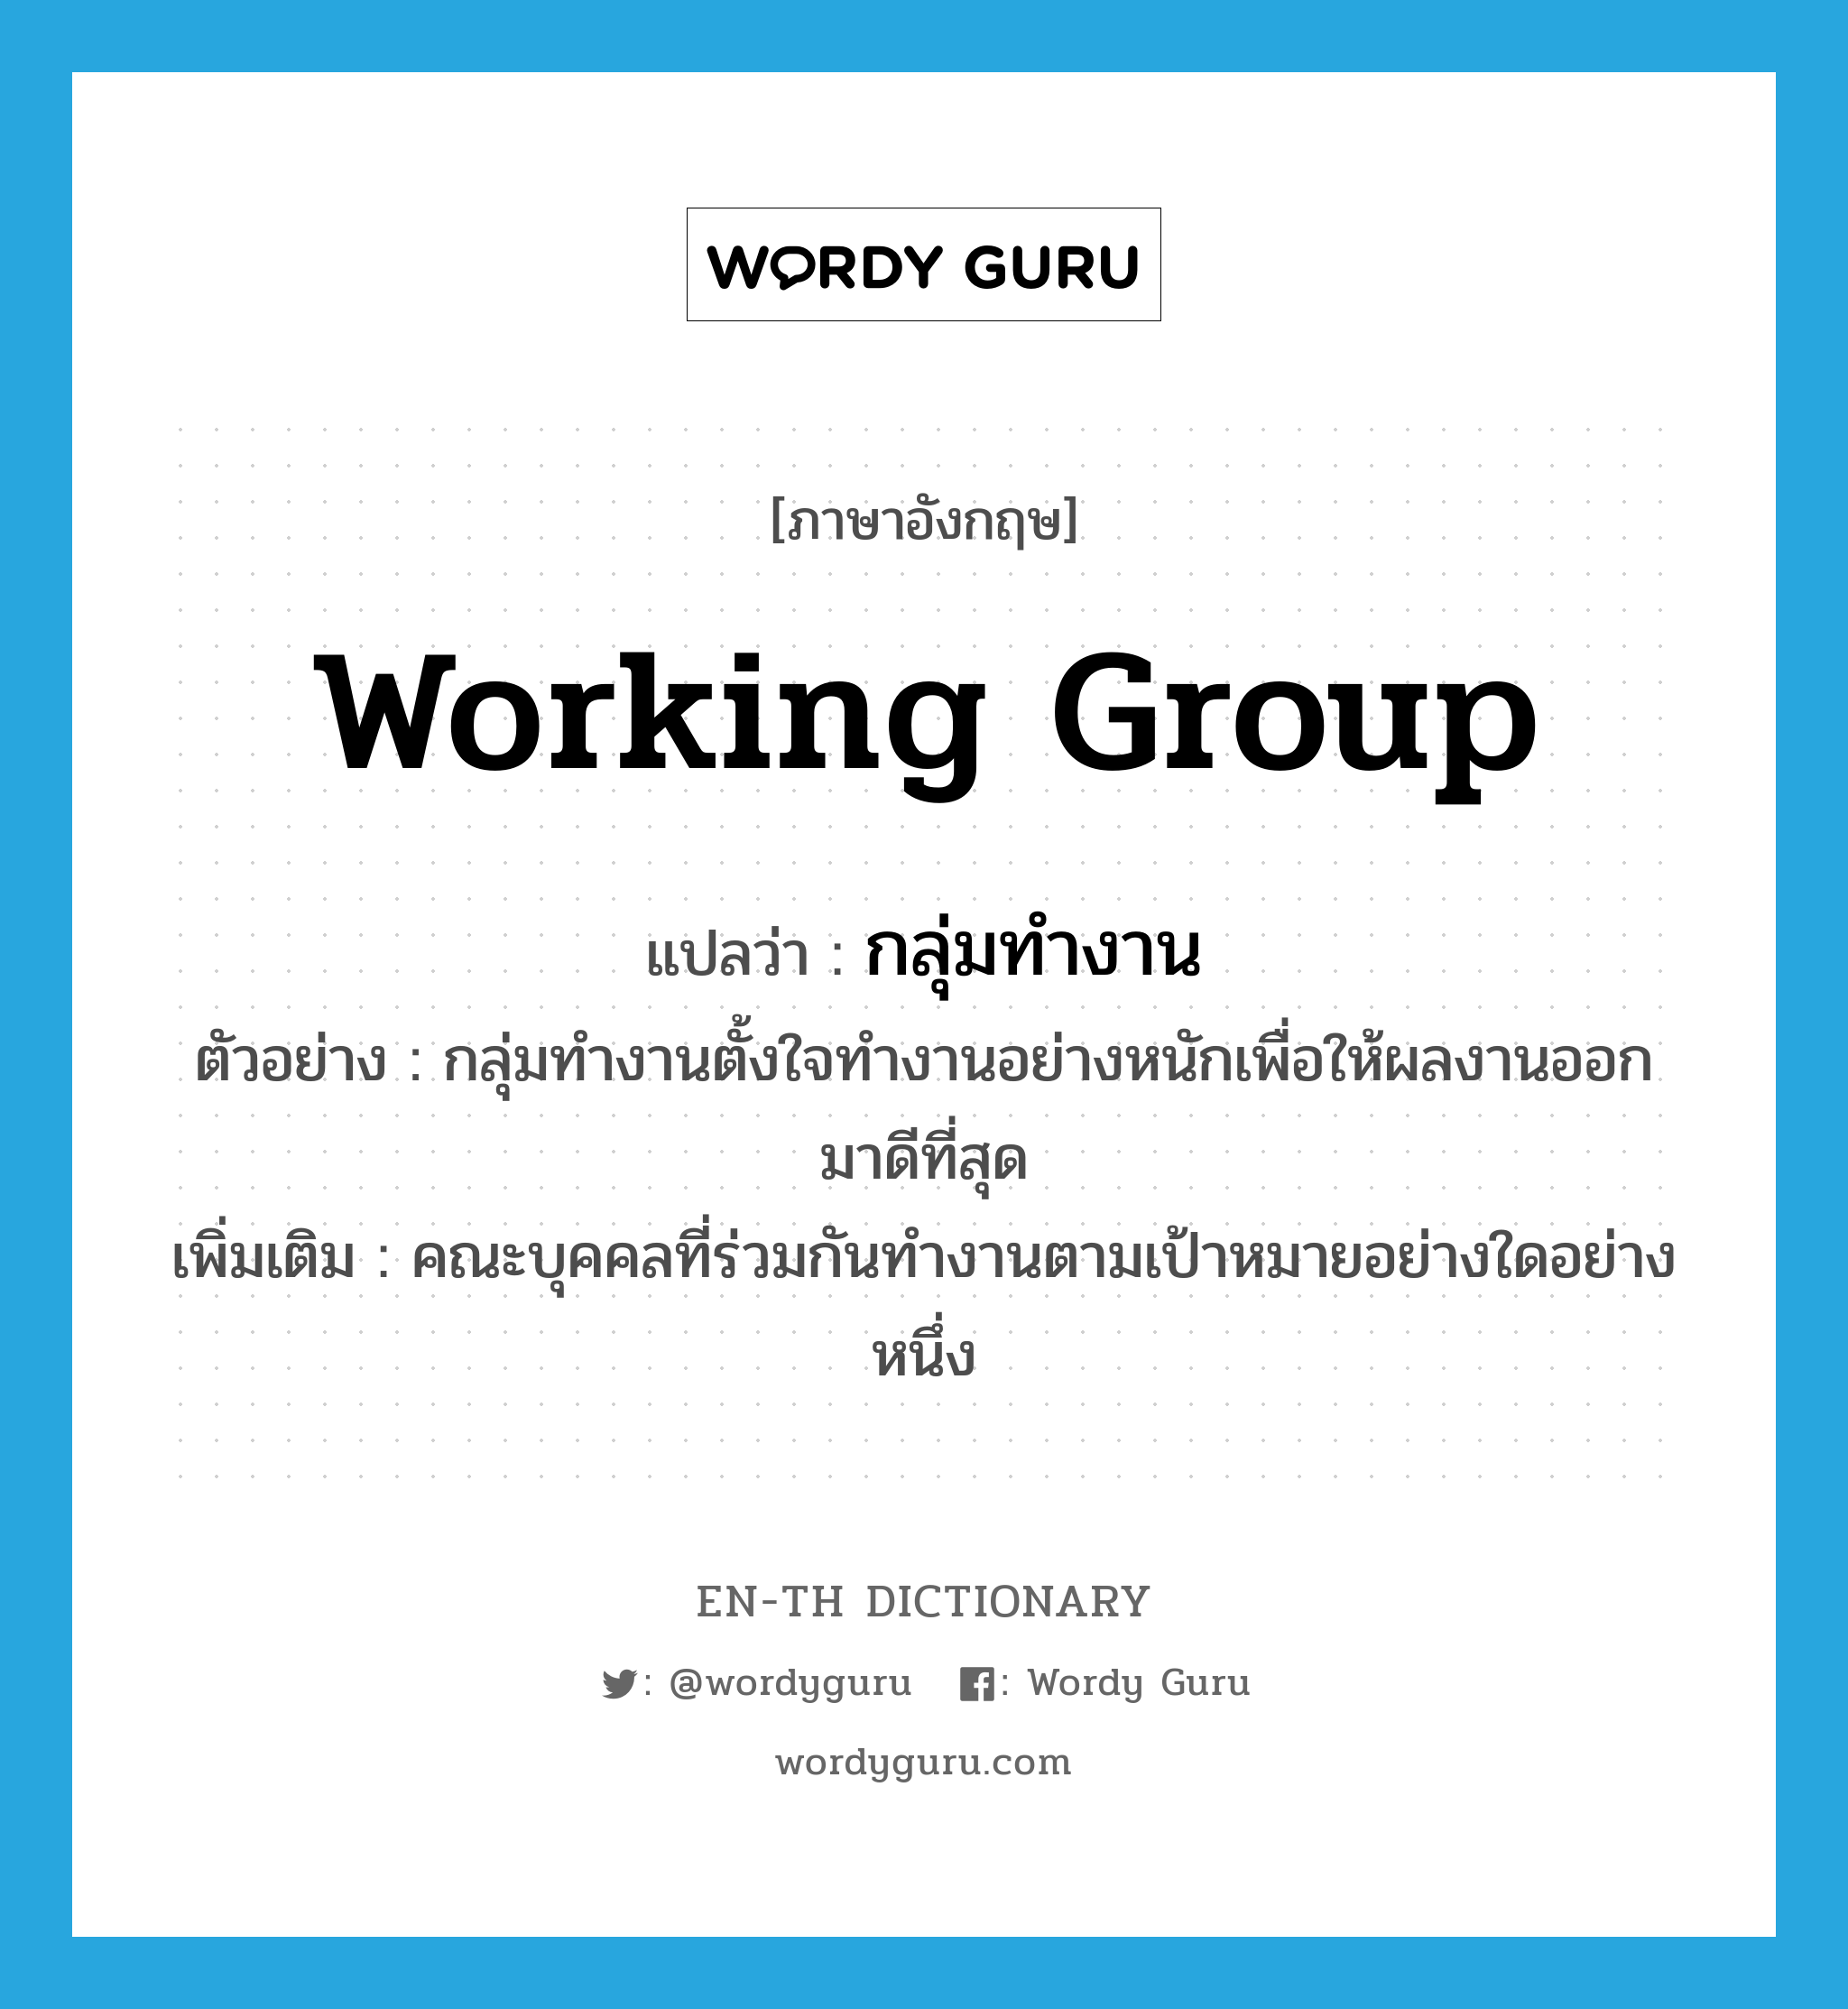 working group แปลว่า?, คำศัพท์ภาษาอังกฤษ working group แปลว่า กลุ่มทำงาน ประเภท N ตัวอย่าง กลุ่มทำงานตั้งใจทำงานอย่างหนักเพื่อให้ผลงานออกมาดีที่สุด เพิ่มเติม คณะบุคคลที่ร่วมกันทำงานตามเป้าหมายอย่างใดอย่างหนึ่ง หมวด N